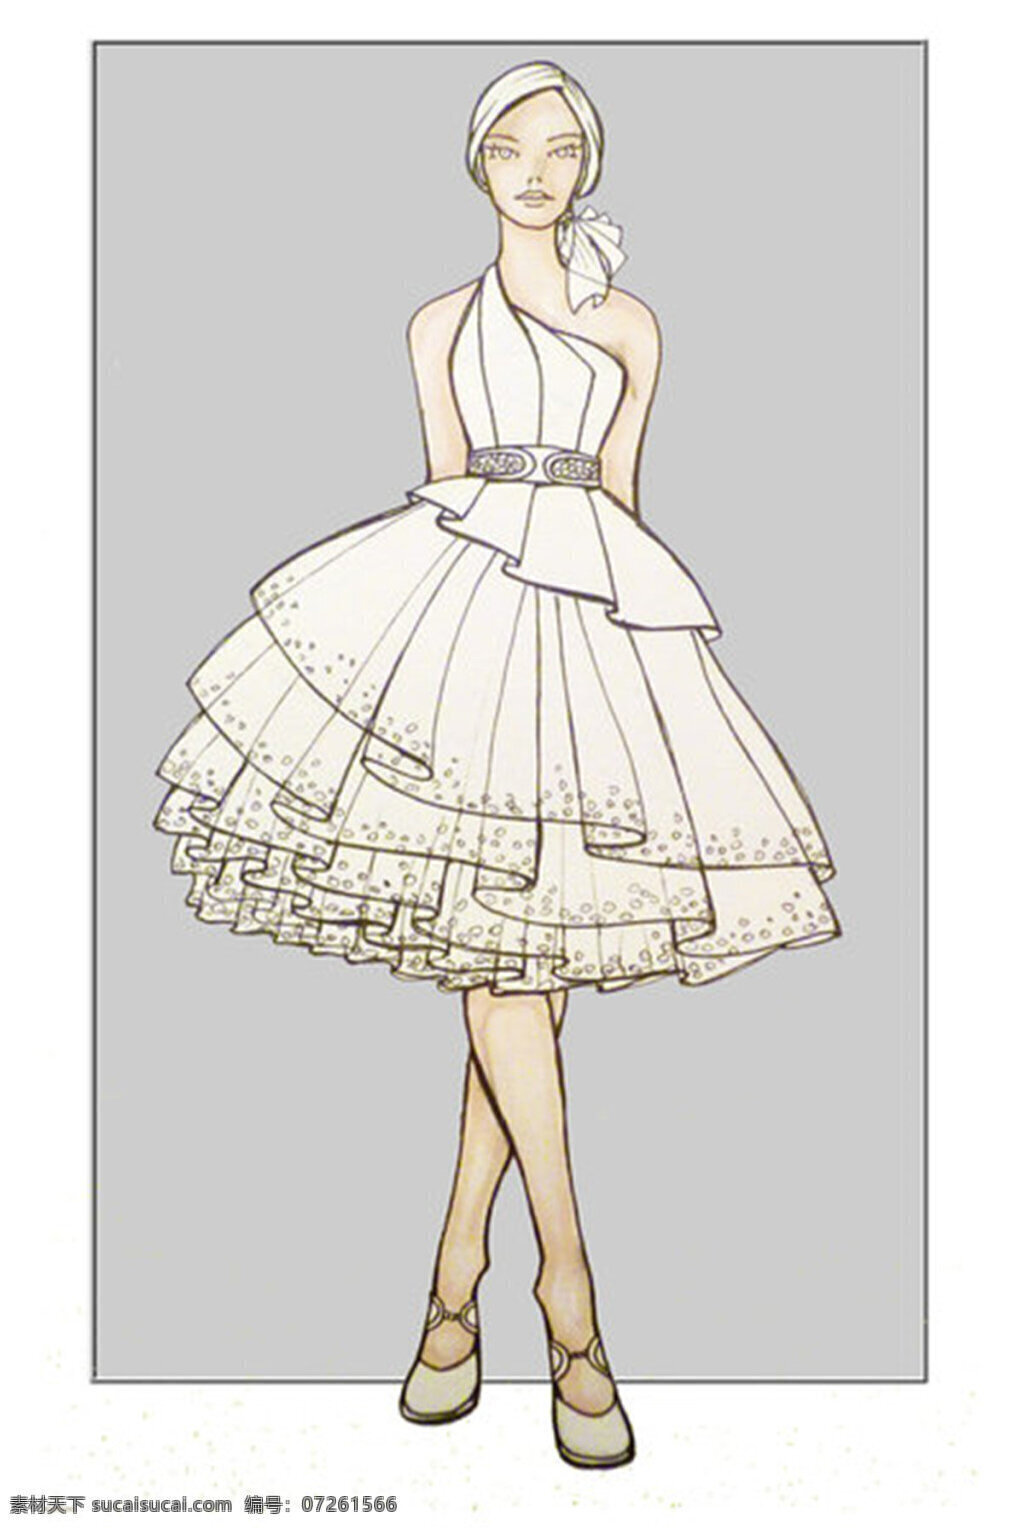 白色 连衣裙 设计图 服装设计 时尚女装 职业女装 职业装 女装设计 效果图 短裙 衬衫 服装 服装效果图